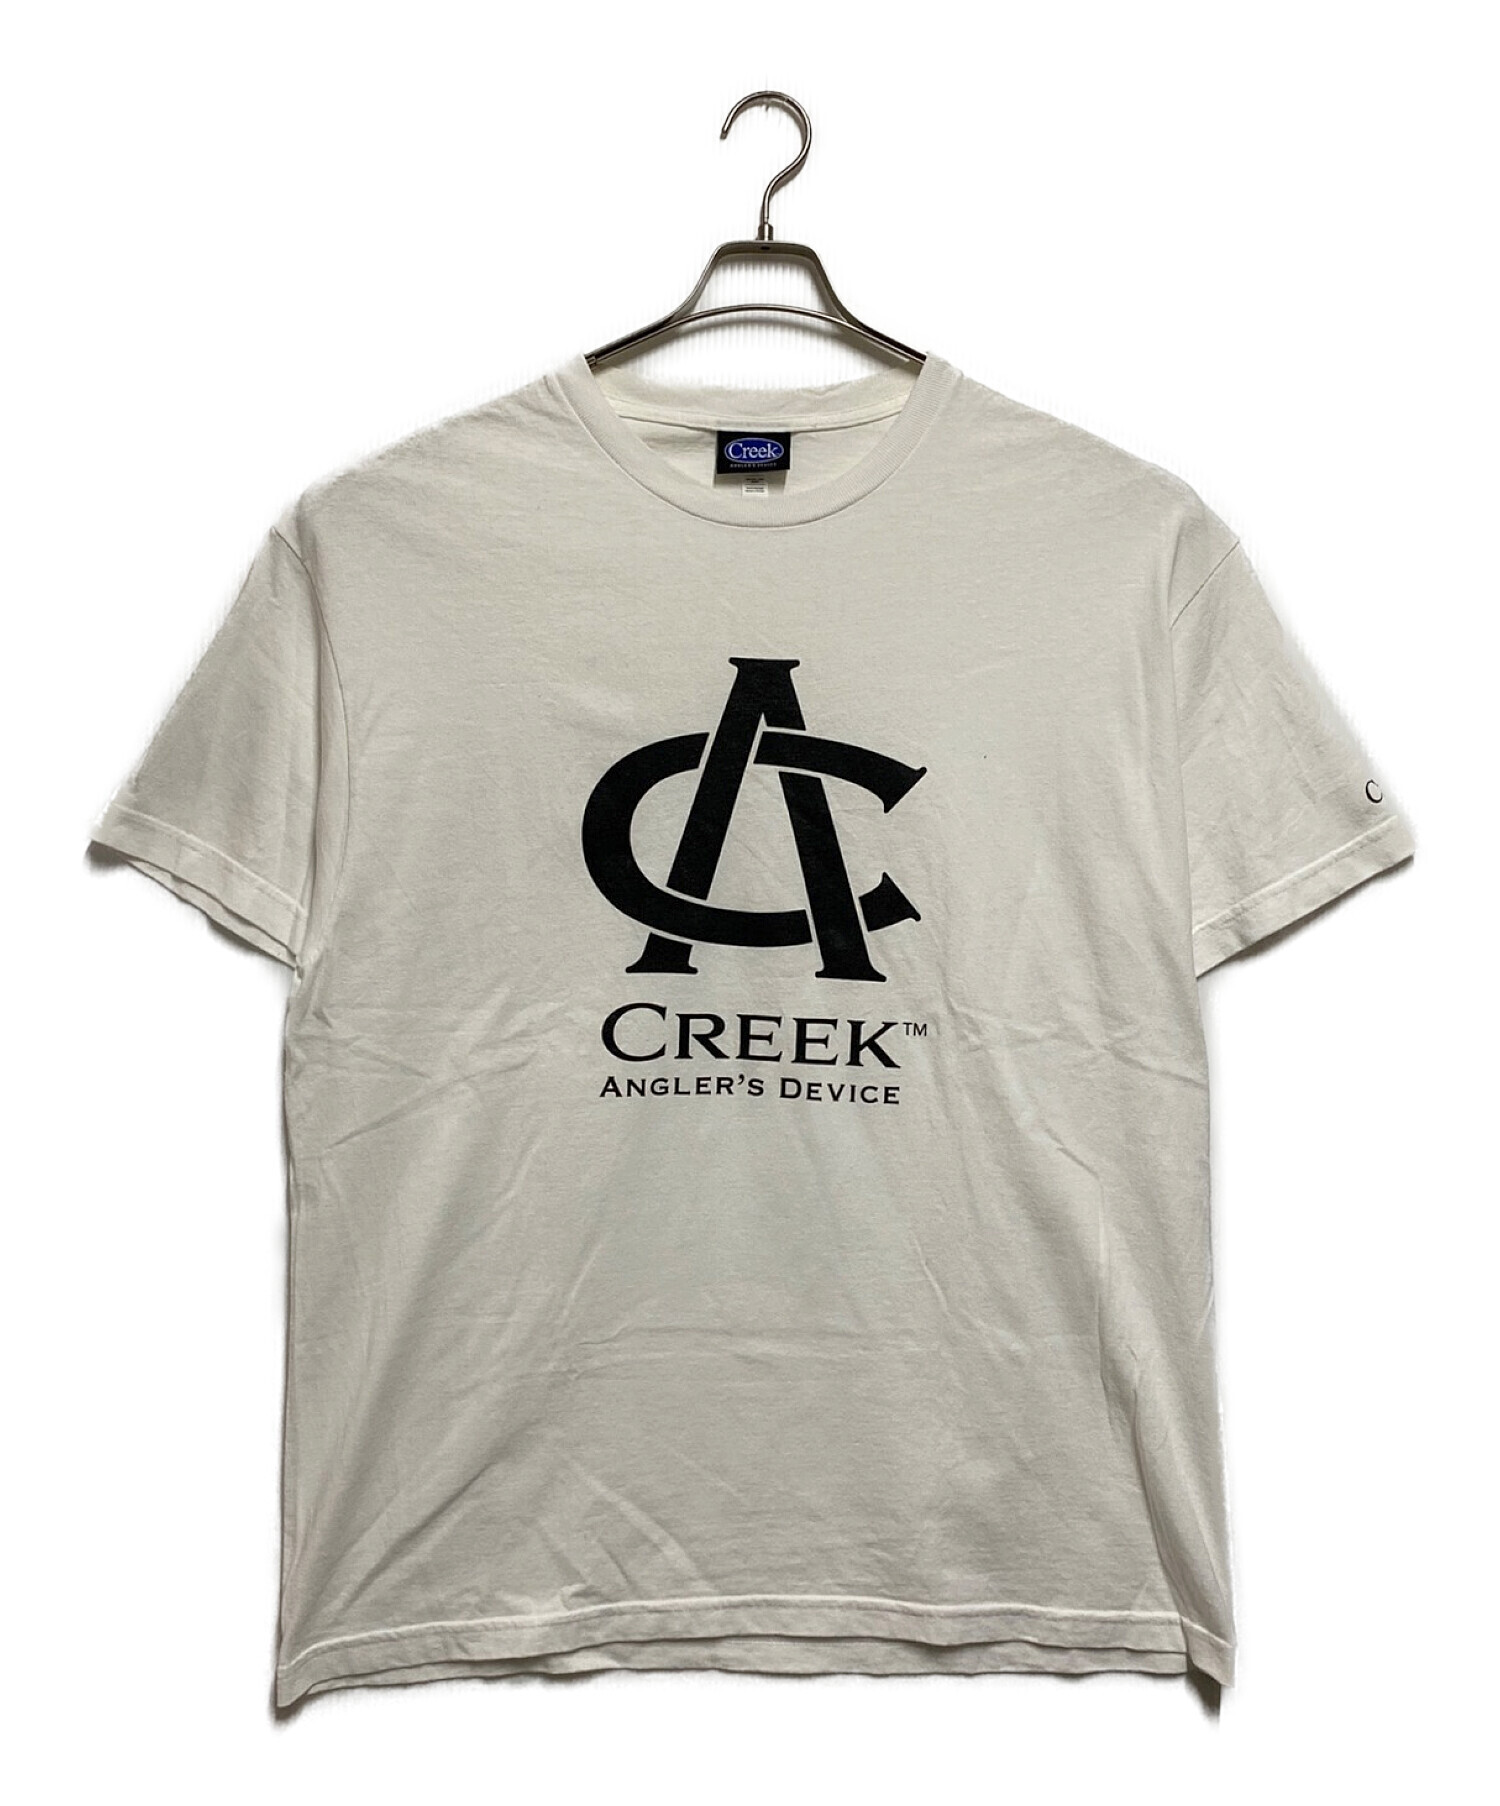 ラッピング無料】 Device Angler's Creek Tシャツ L Size ホワイト ...